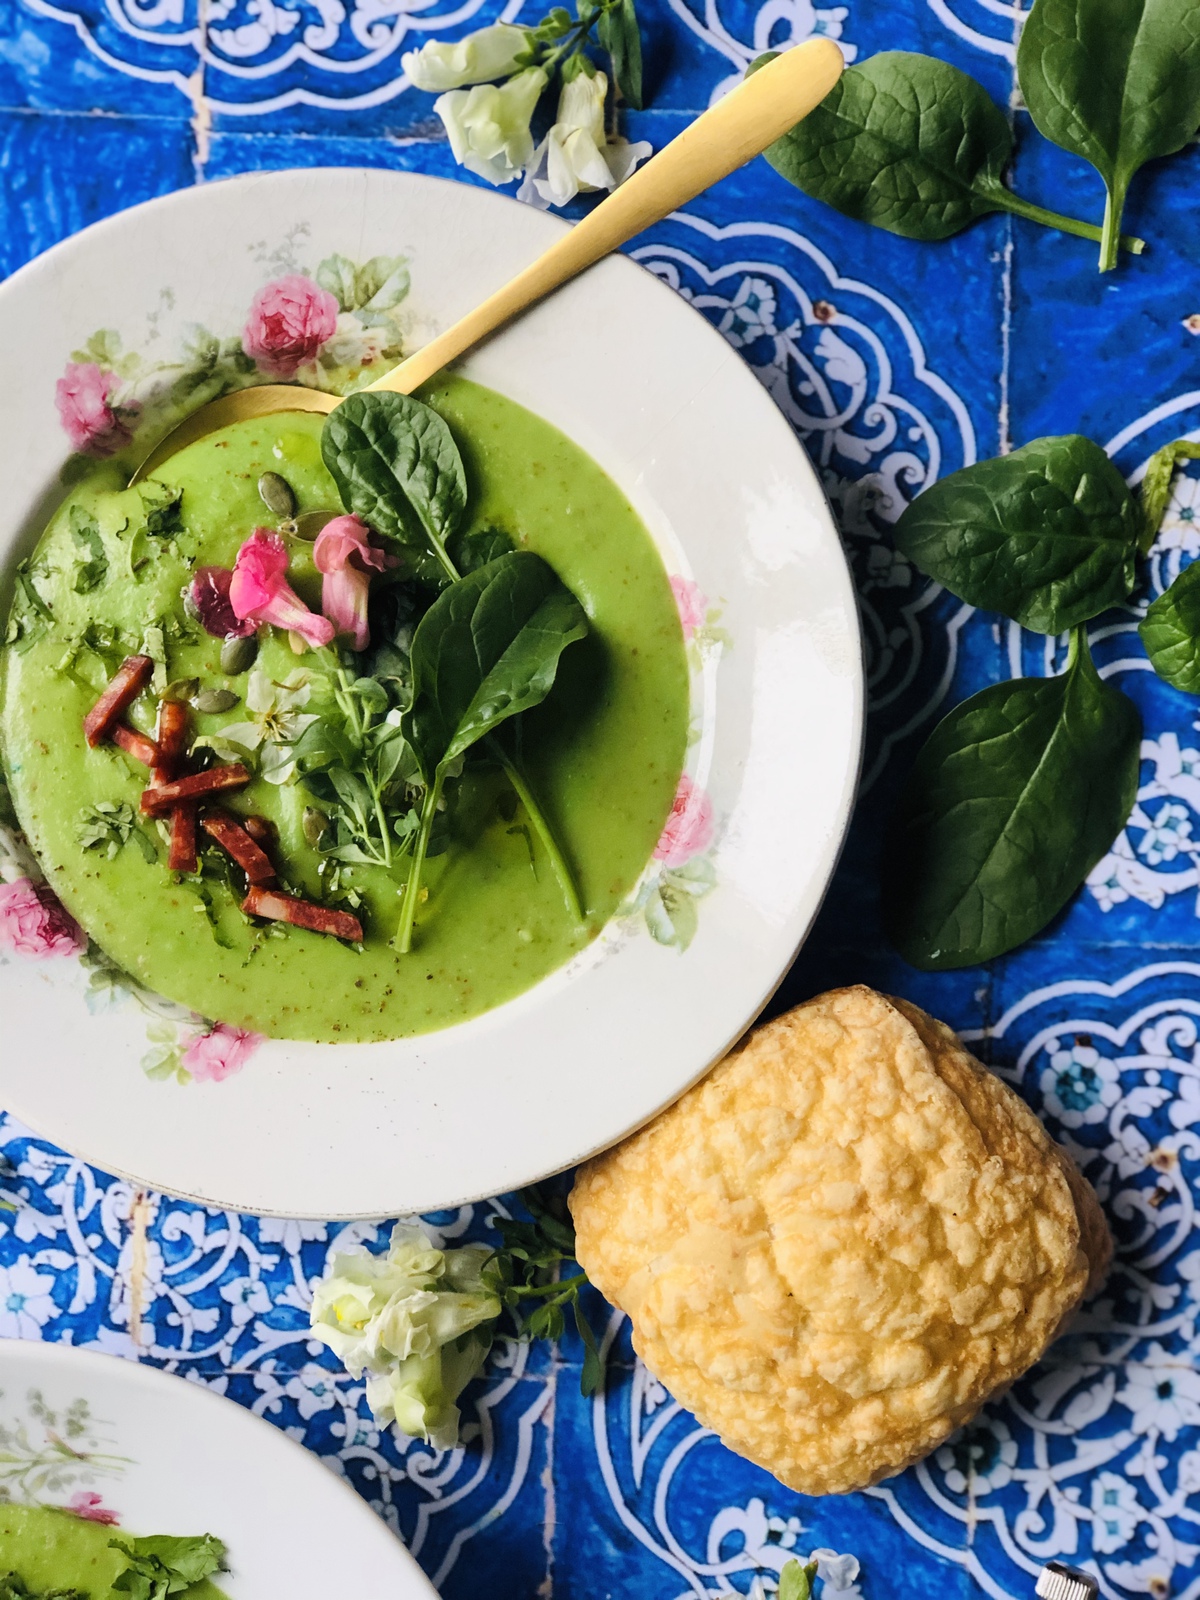 Caldo verde, soupe portugaise au chou vert et au chouriço - L